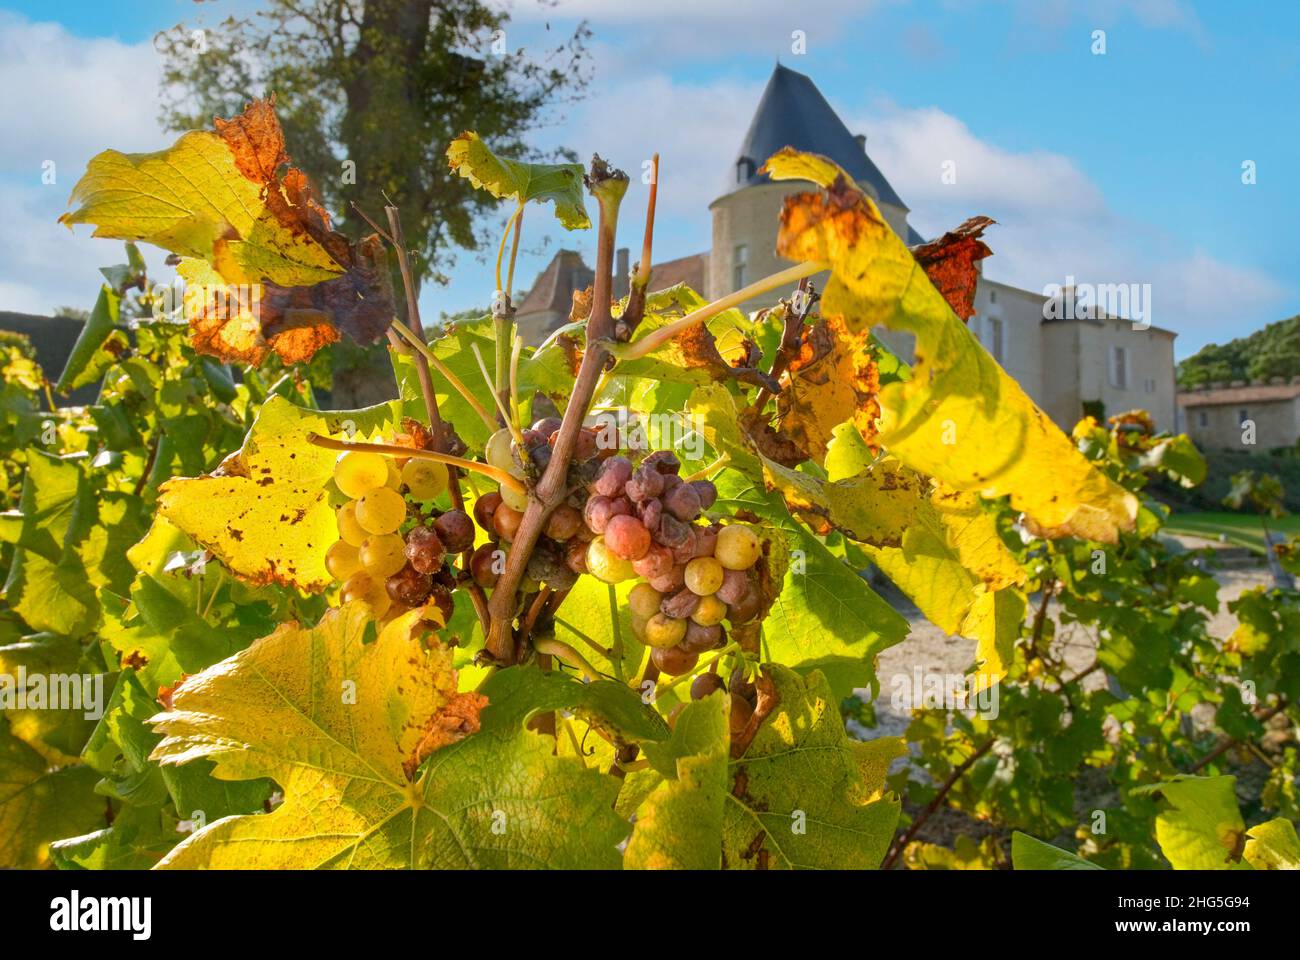 CHATEAU D’YQUEM controlado Botrytis noble putrefacción afectó uvas de semillón en la vid en Chateau d'Yquem Sauternes Gironde Francia Foto de stock